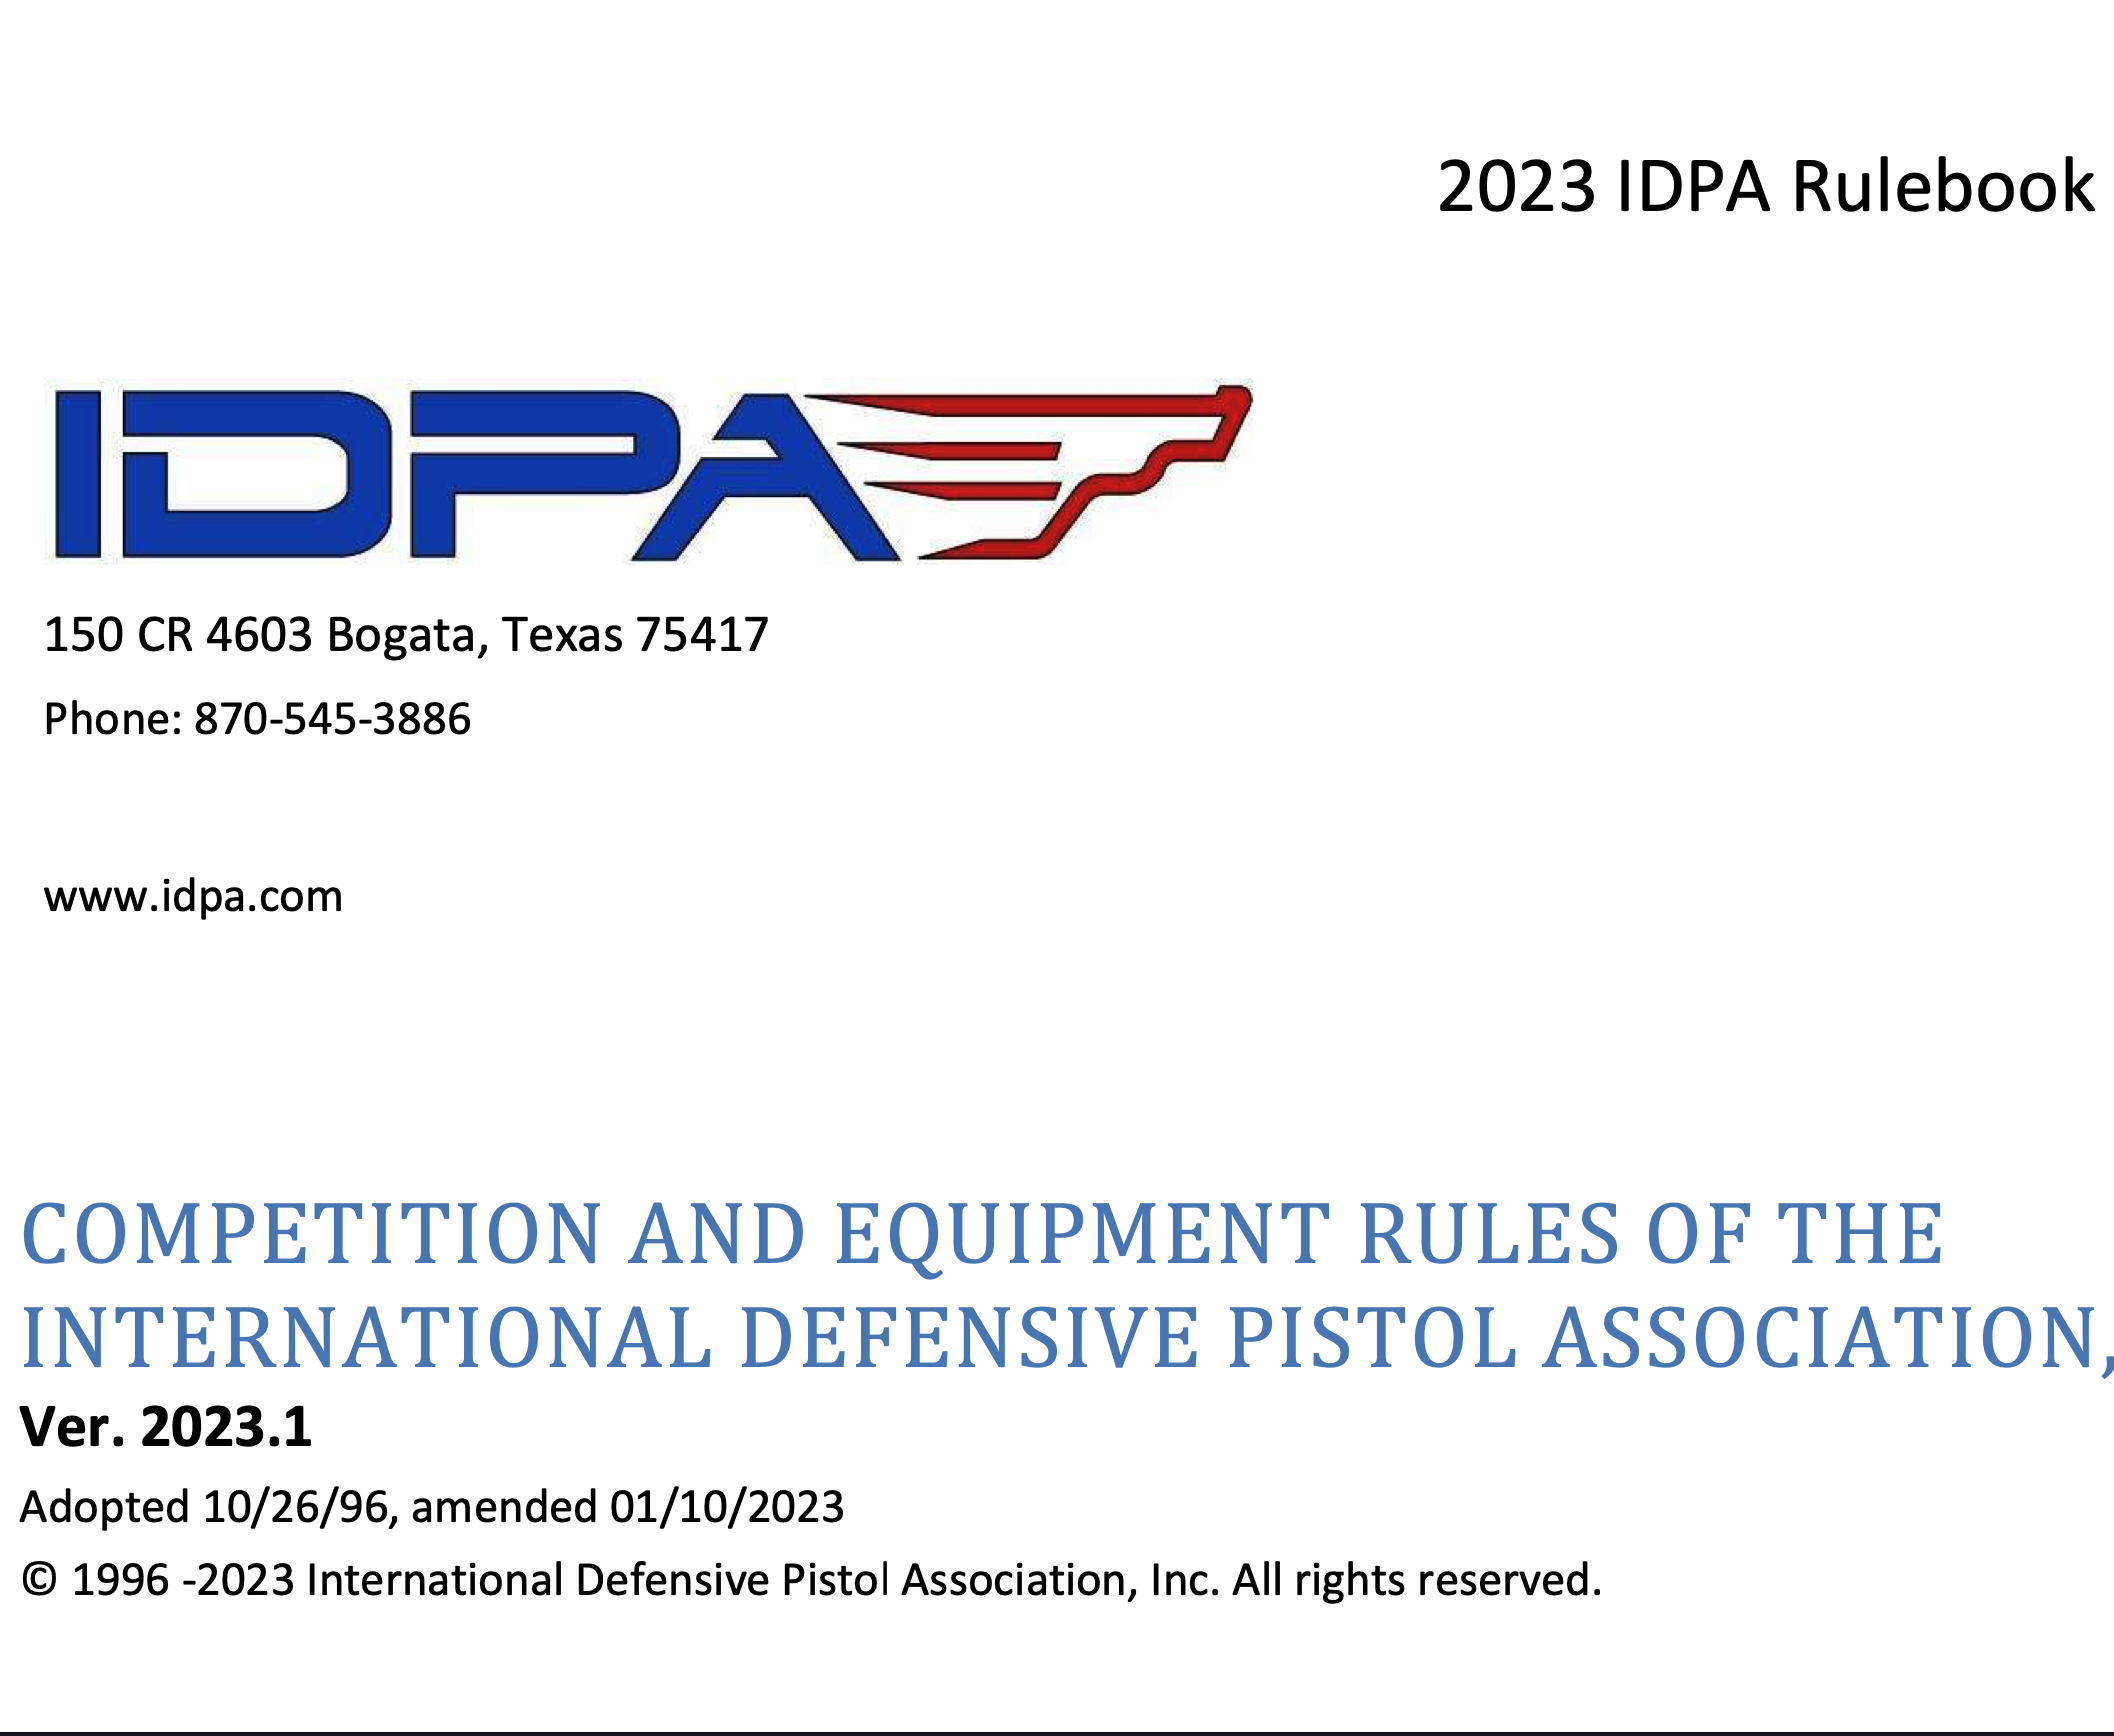 IDPA World Championship Date Change International Defensive Pistol